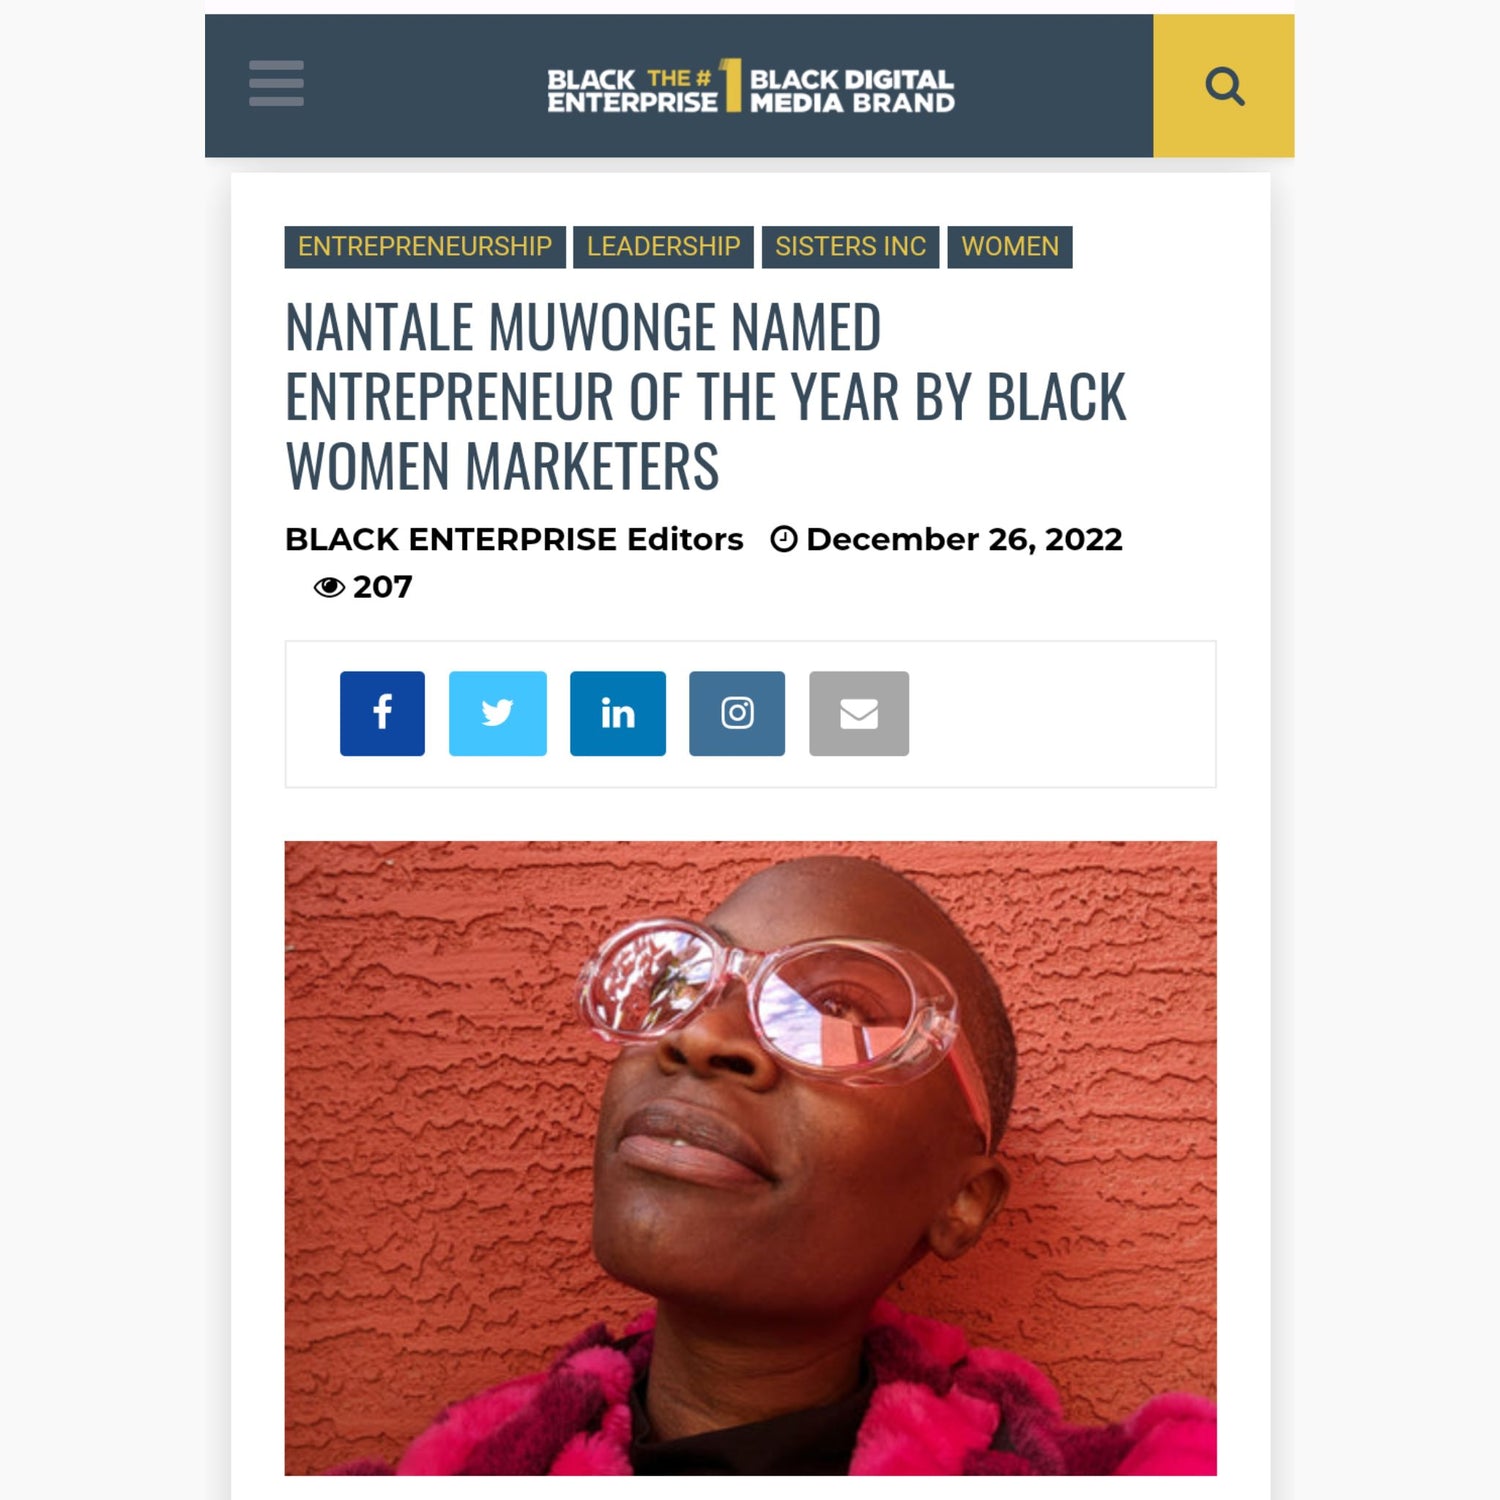 Nantale Muwonge in Black Enterprise for Entrepreneur of The Year